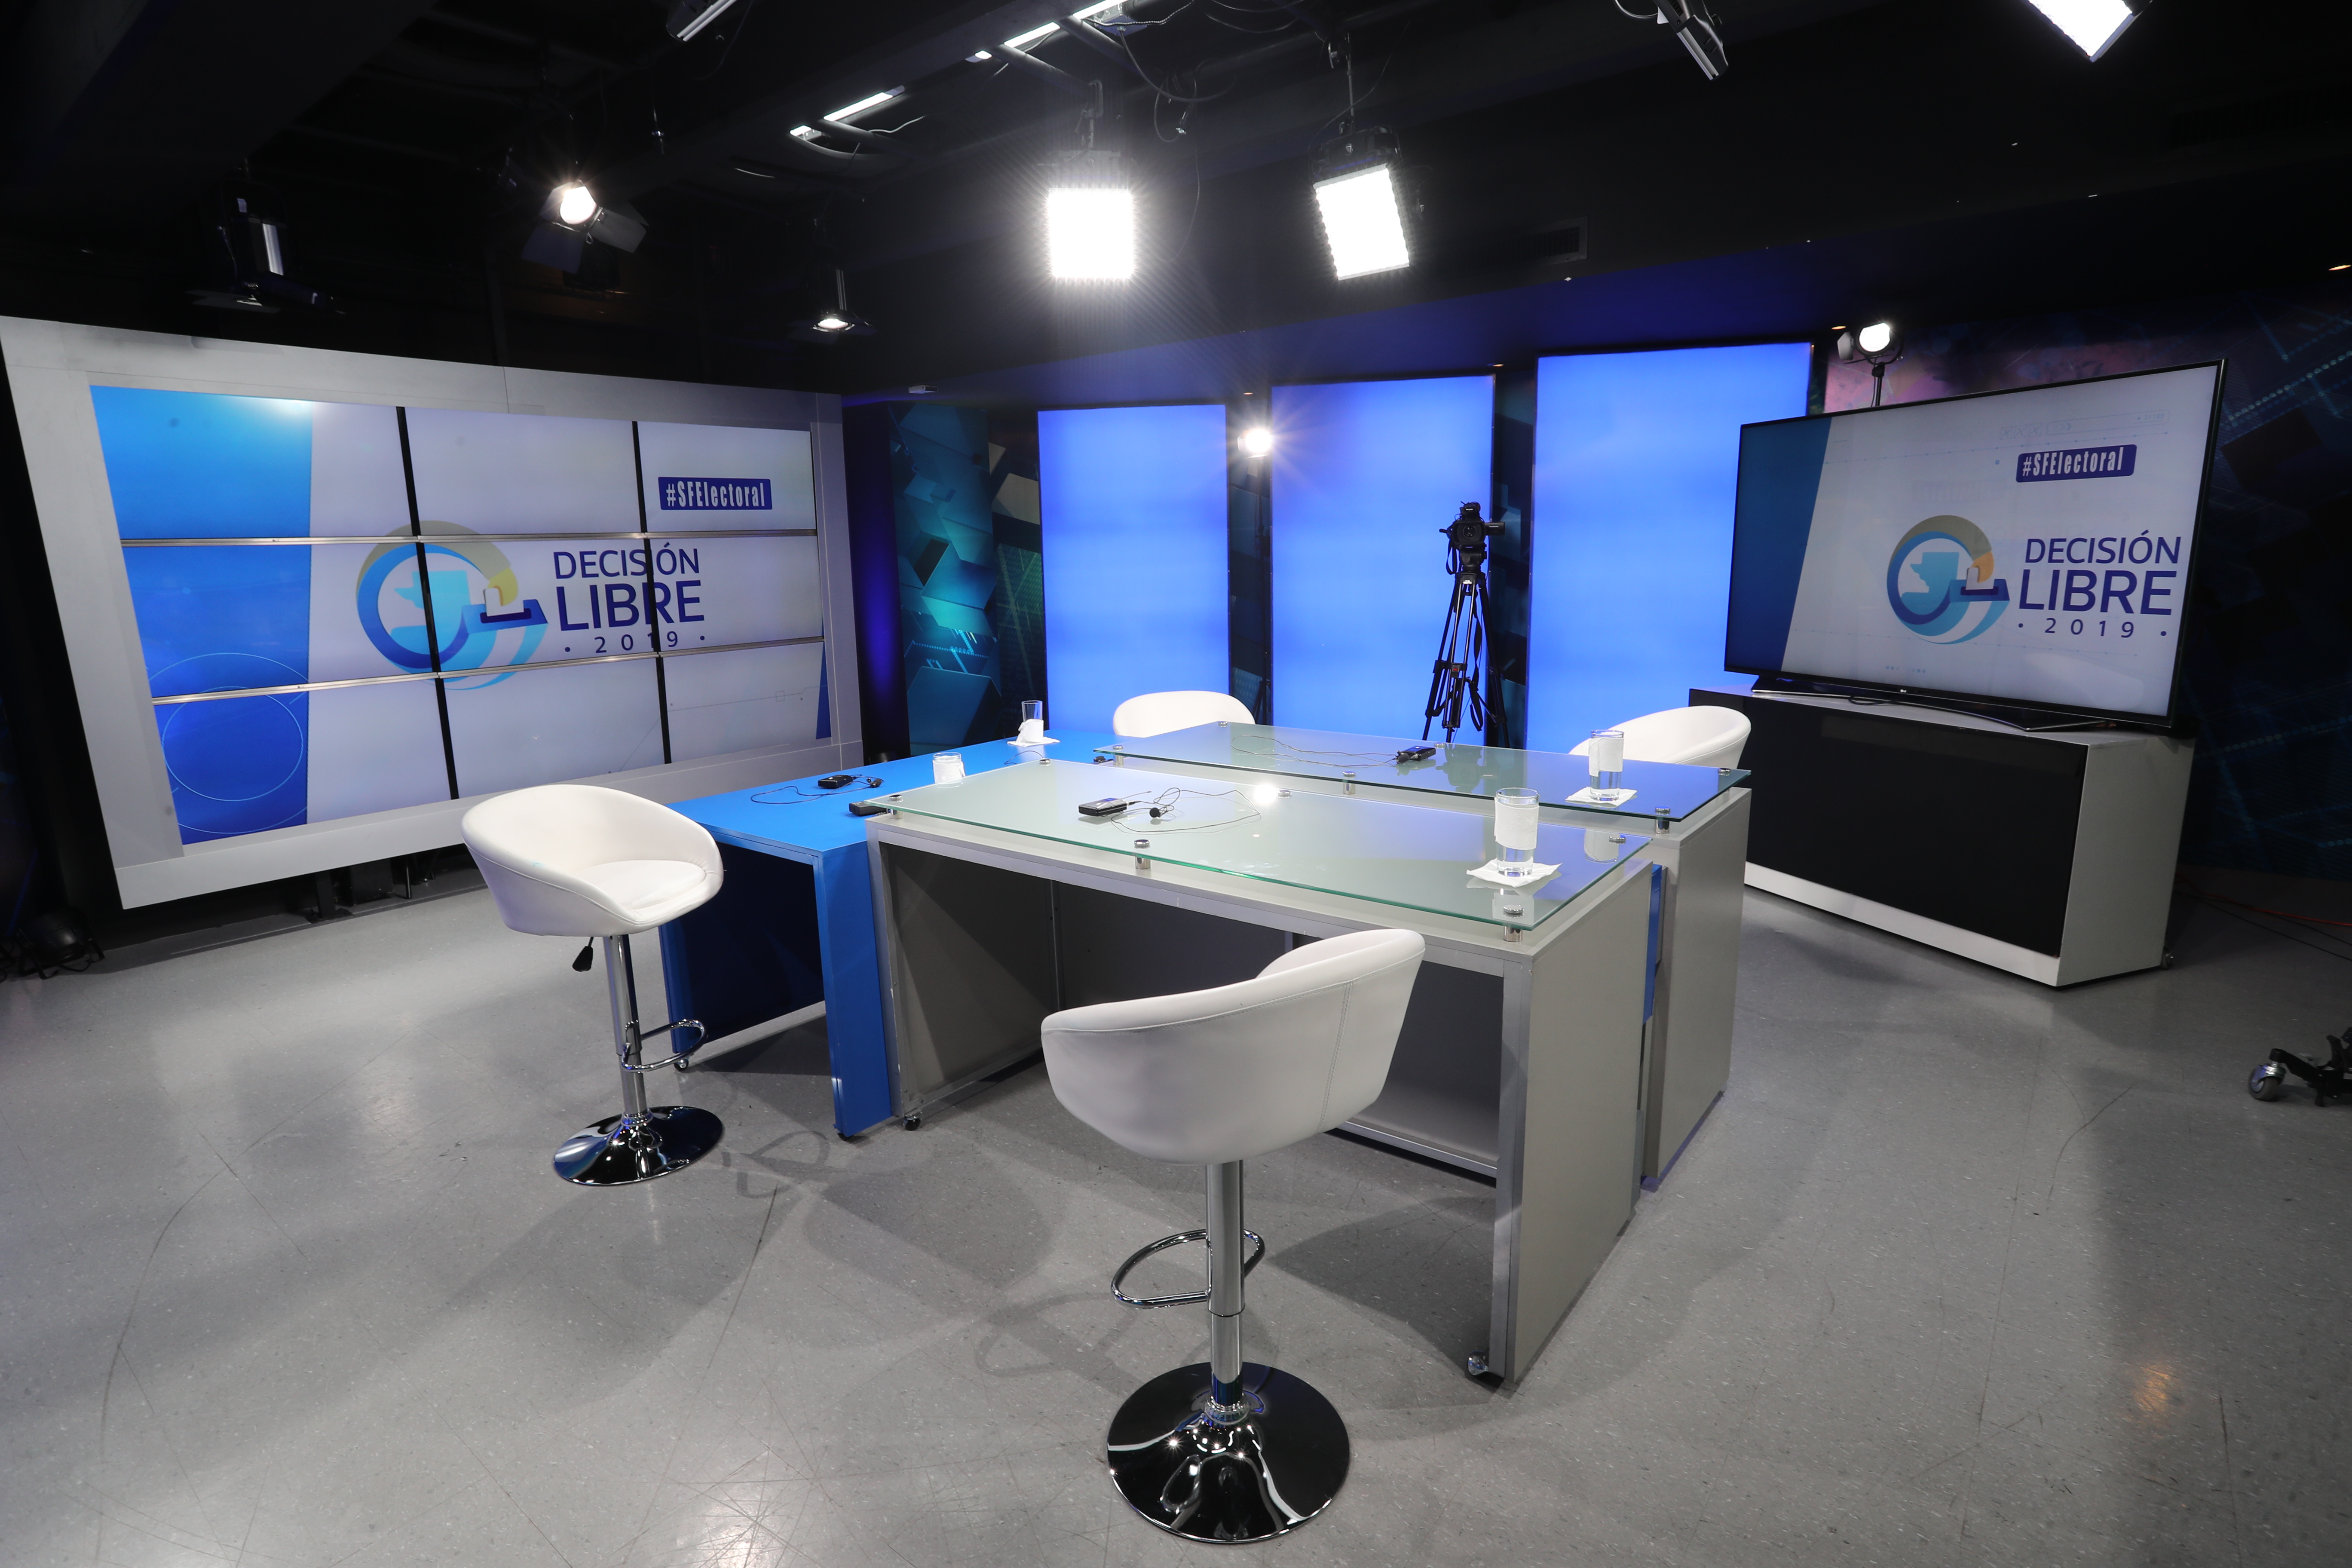 Set del programa Sin Filtro Electoral, transmitido por Guatevisión y Prensa Libre.